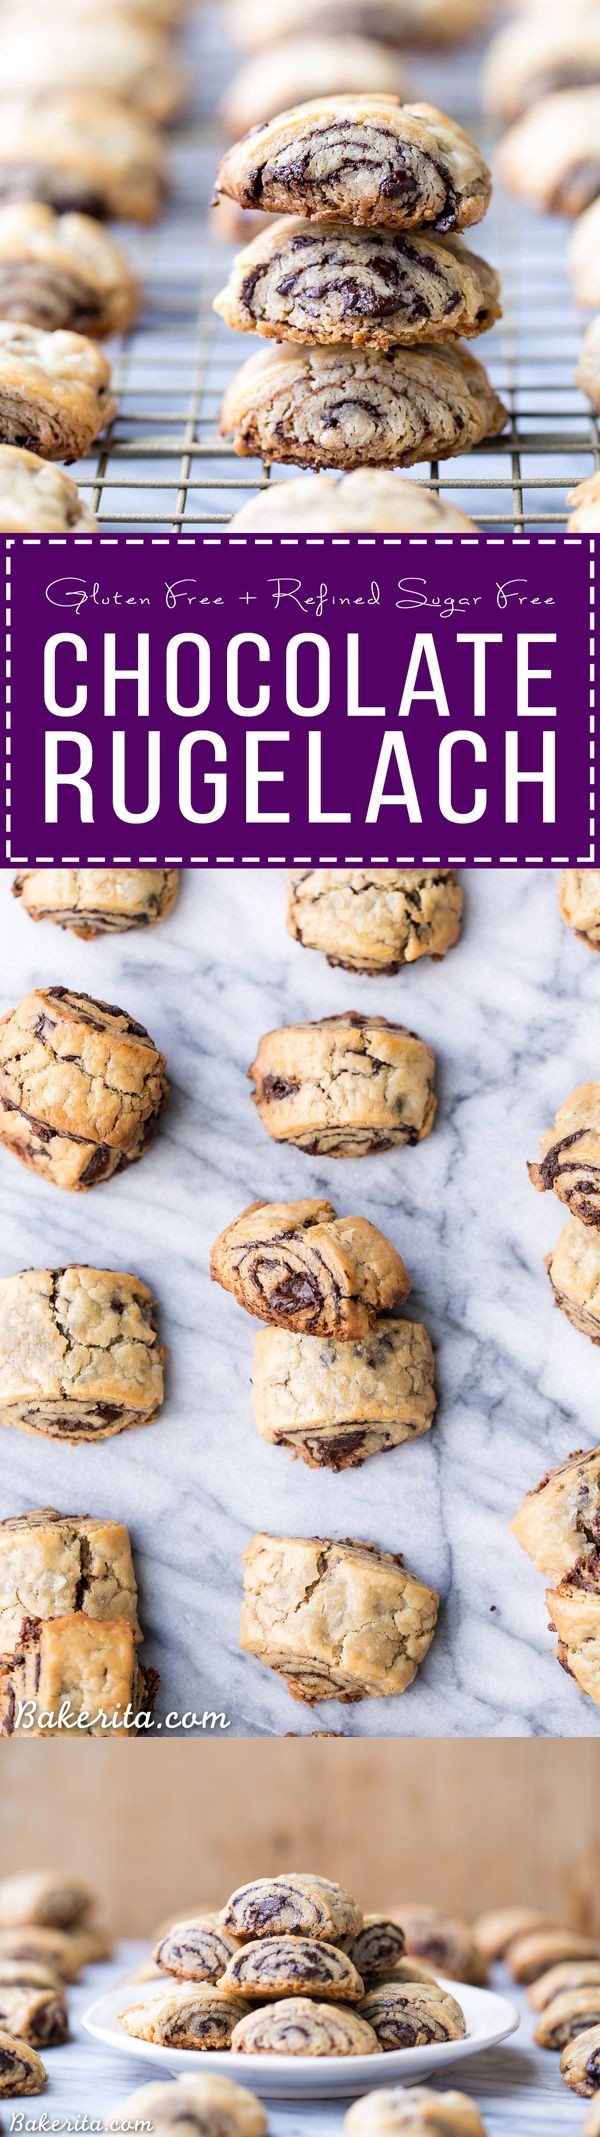 Chocolate Rugelach (Gluten Free + Refined Sugar Free